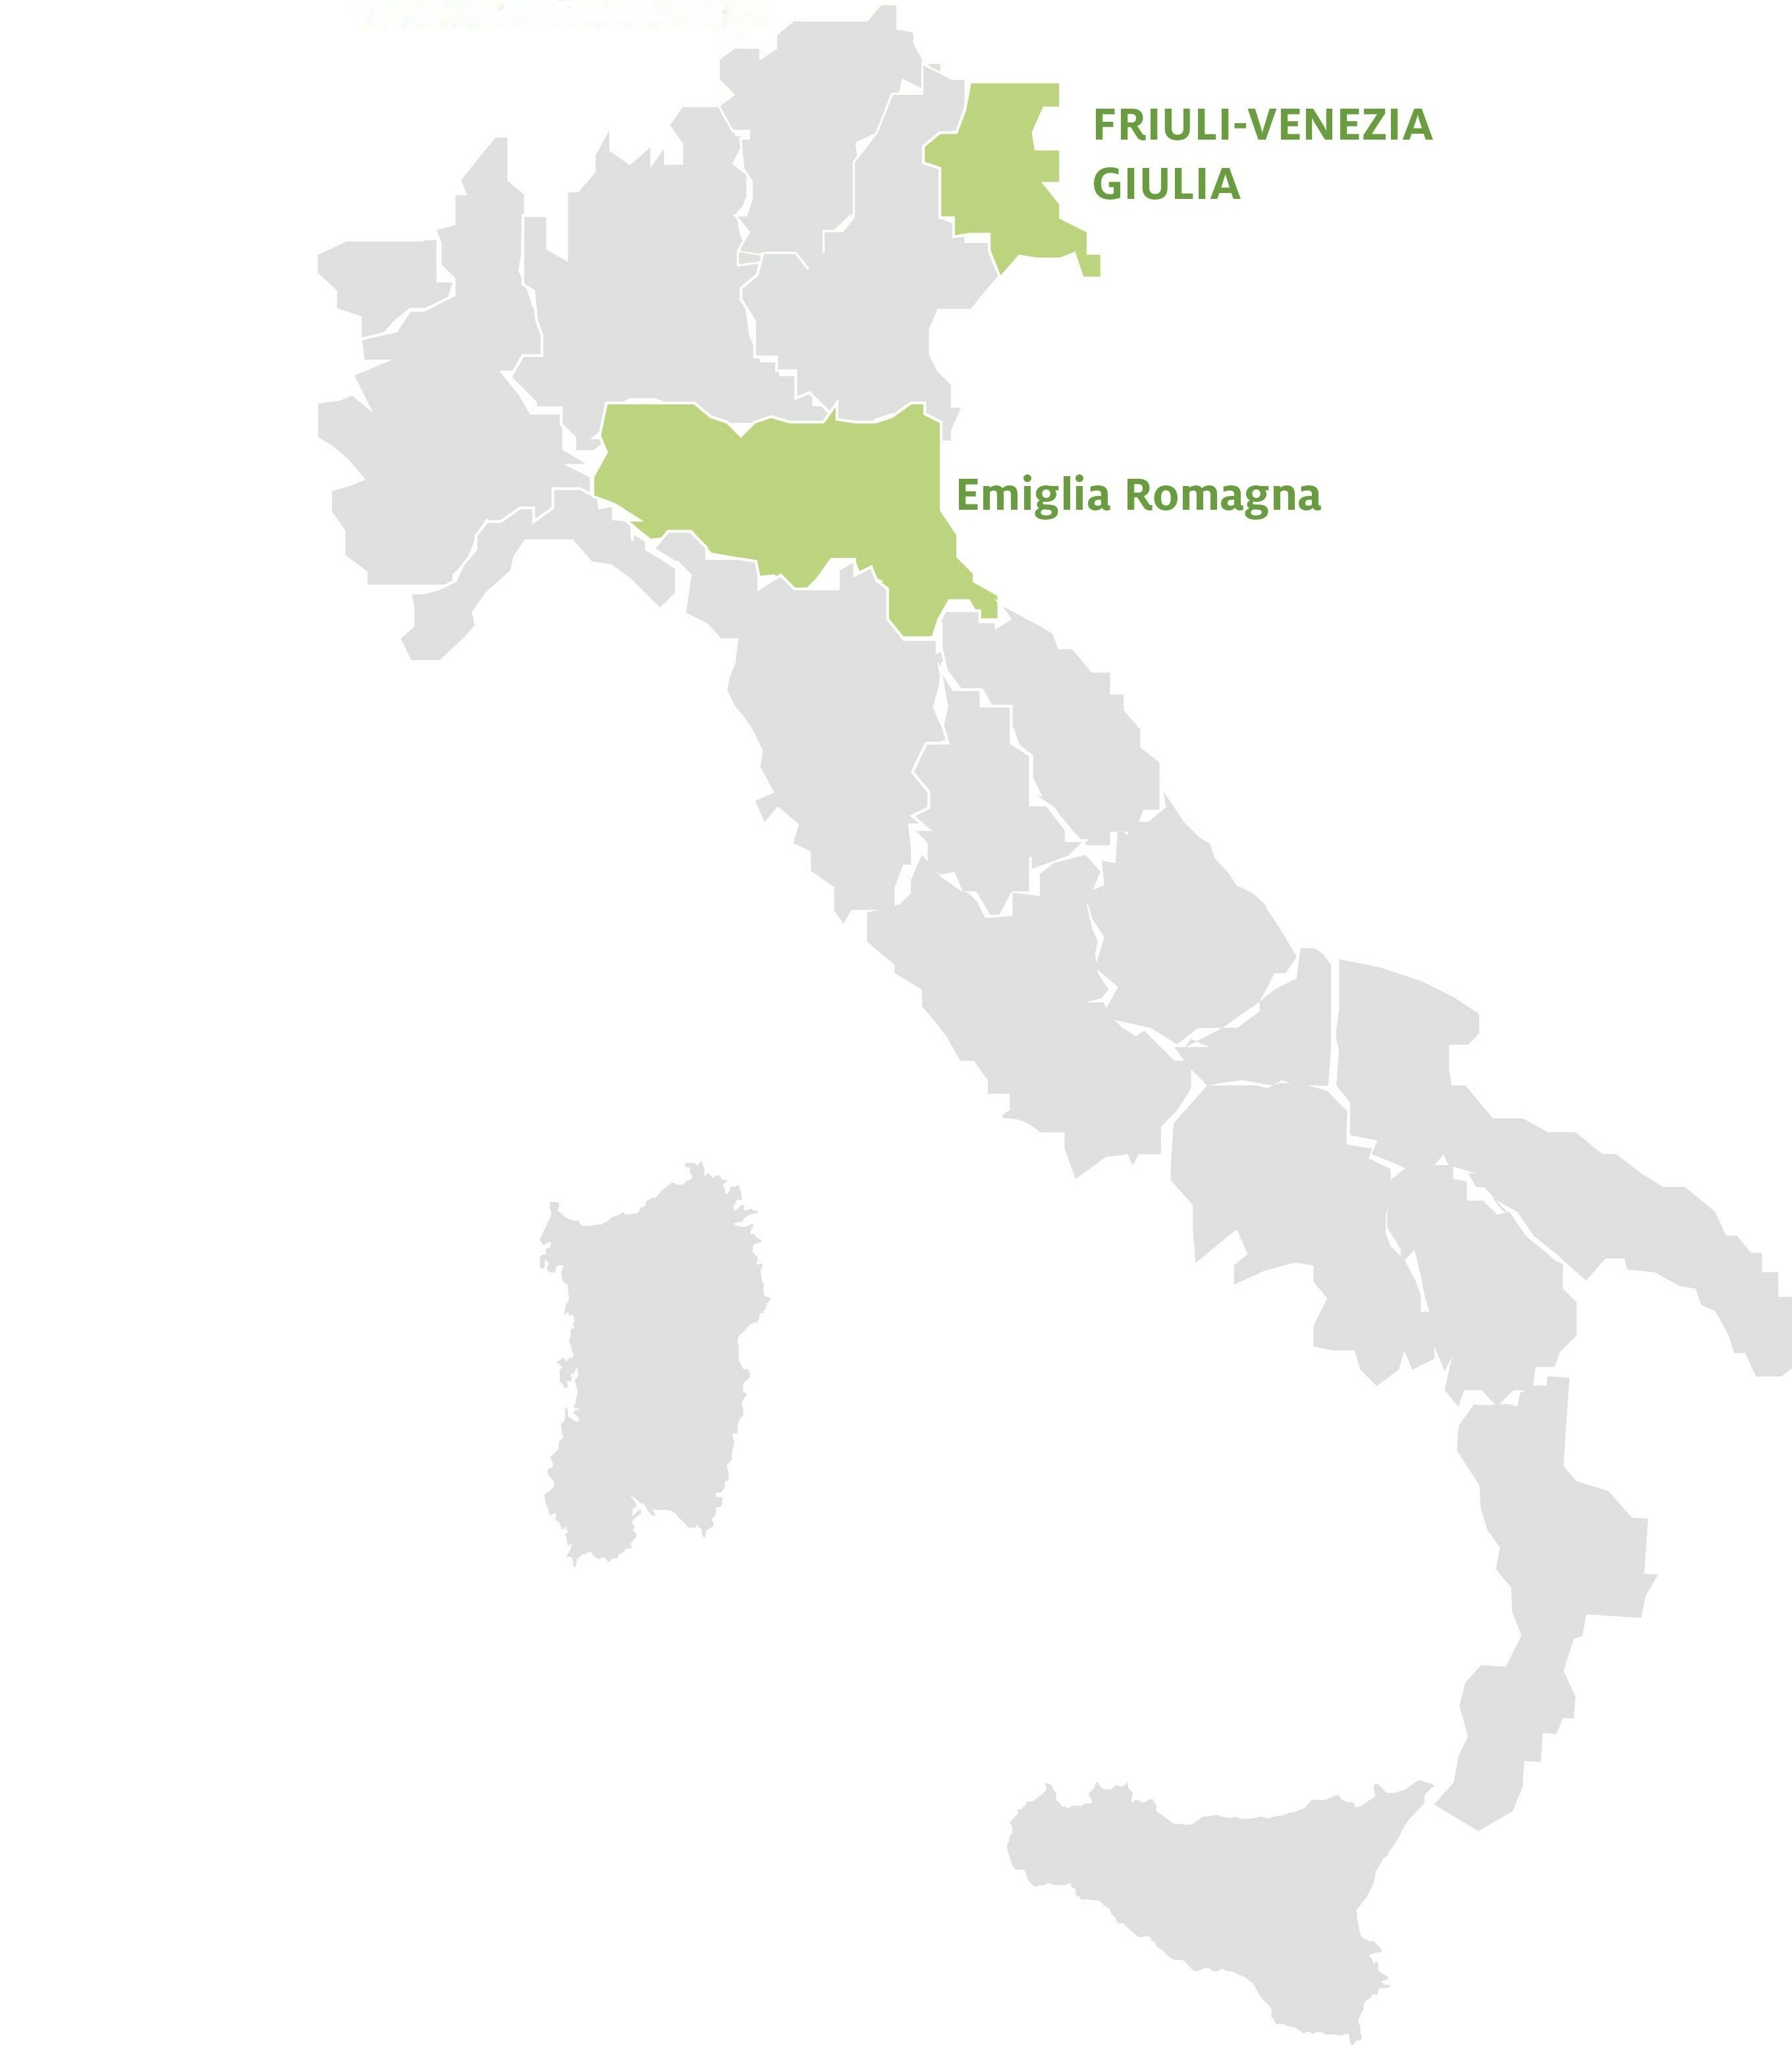 Karte der italienischen Regionen